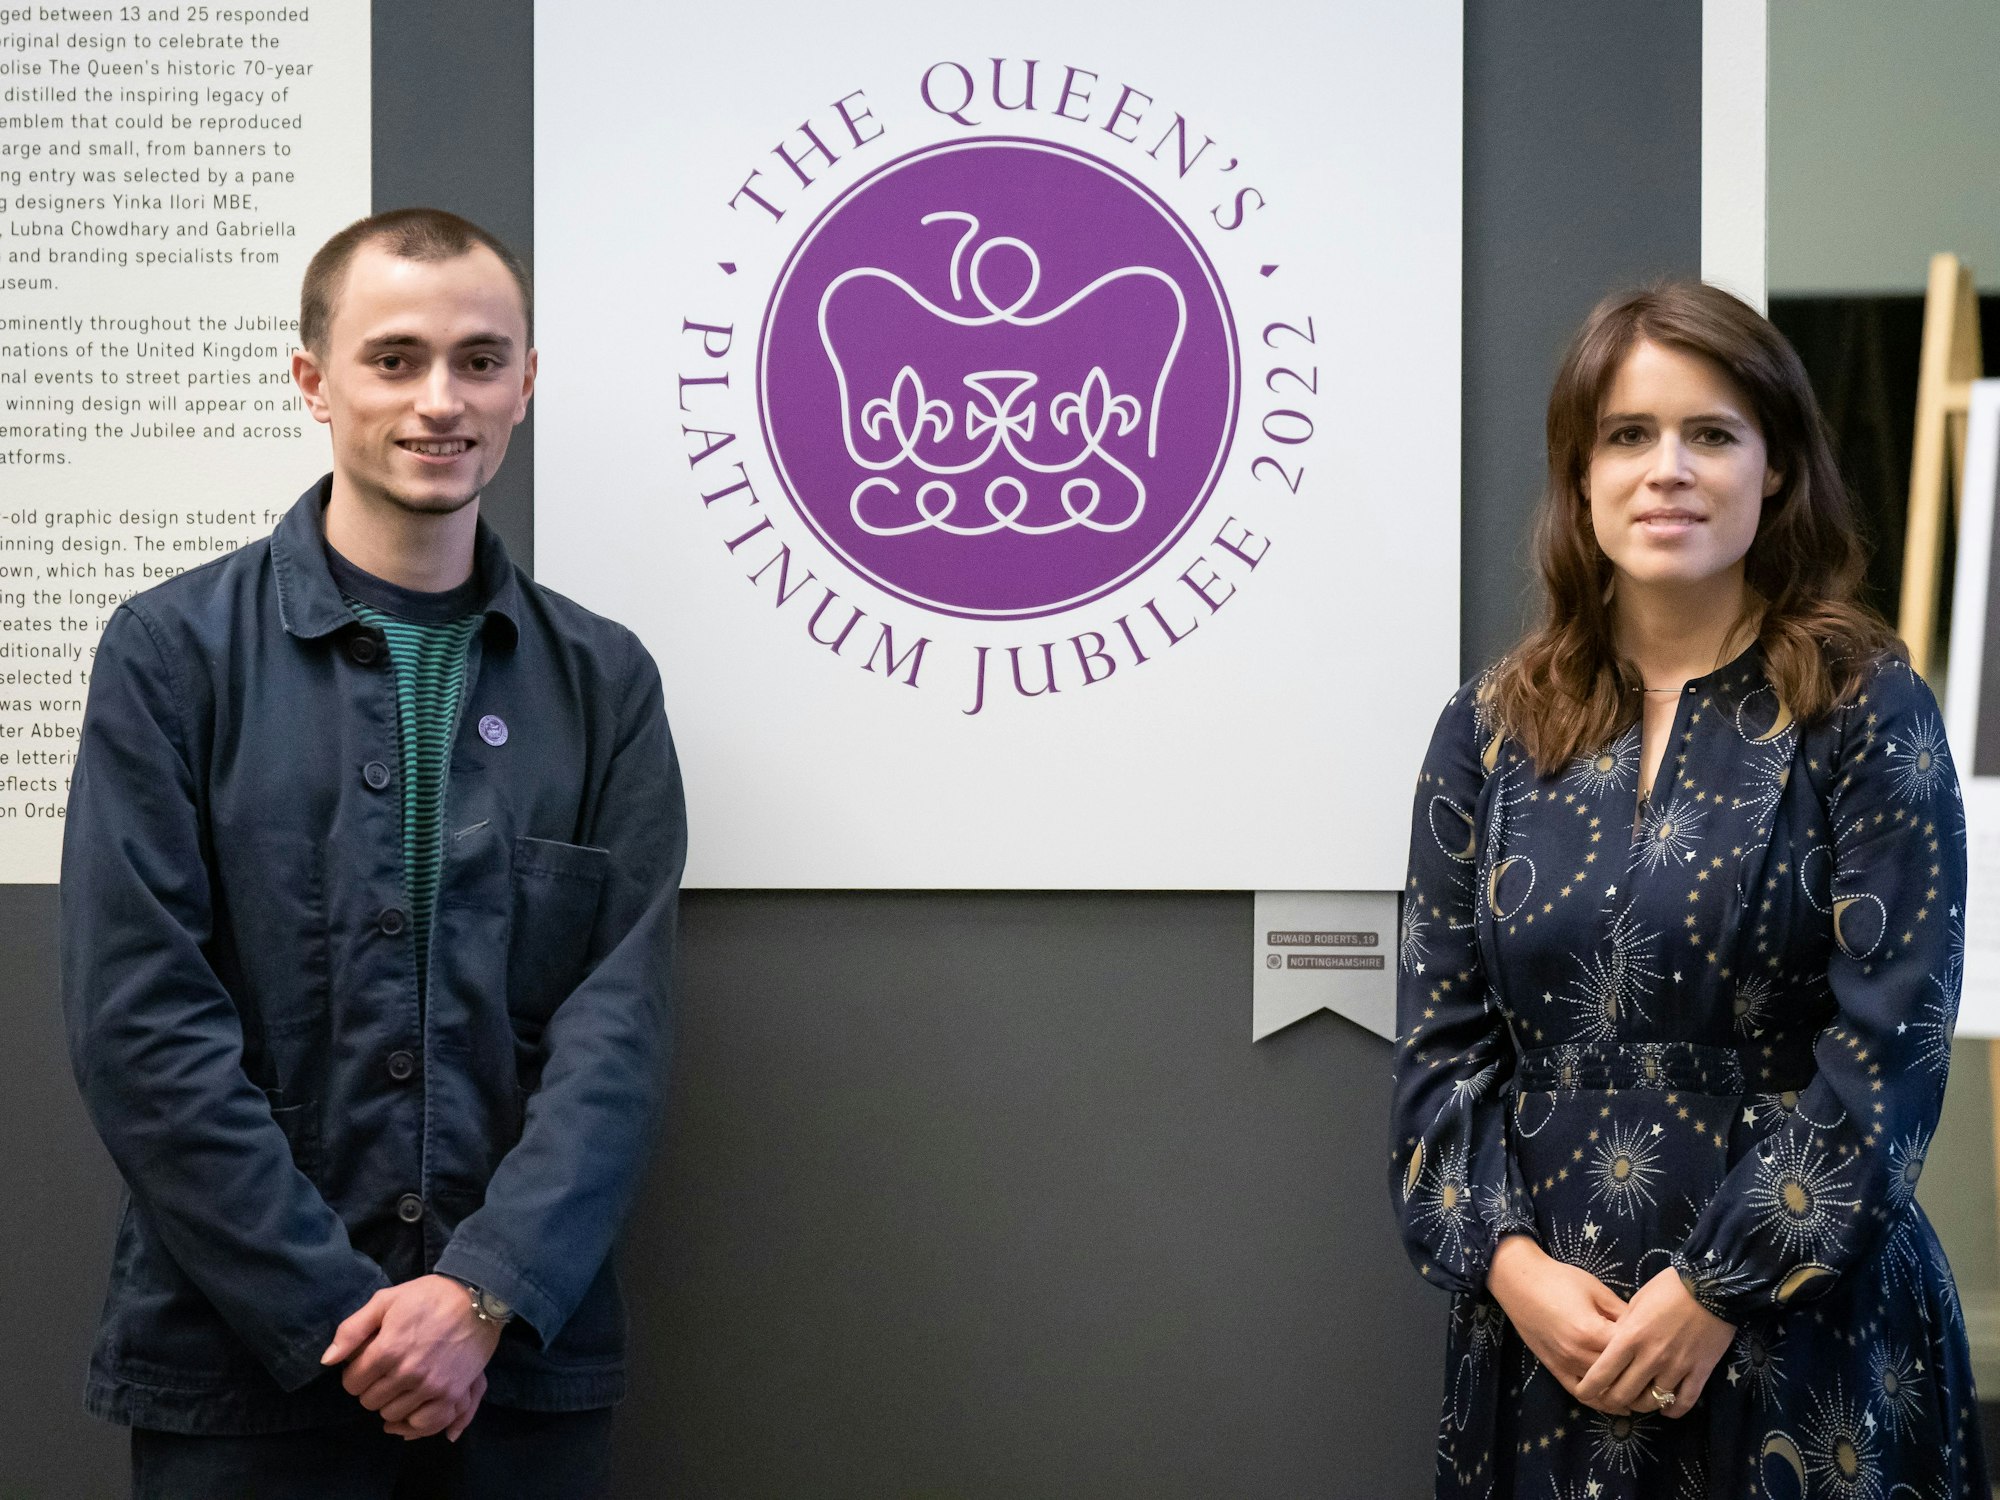 Prinzessin Eugenie (r) unterstützt sie wohltätige Projekte. Hier ist sie am 1. Juni 2022 während eines Besuchs der Ausstellung des Jubiläumsemblems der Königin im V&A Museum an der Seite von Edward Roberts zu sehen, dem Gewinner des Emblem-Wettbewerbs. Die Prinzessin mag Mode mit großen Mustern.